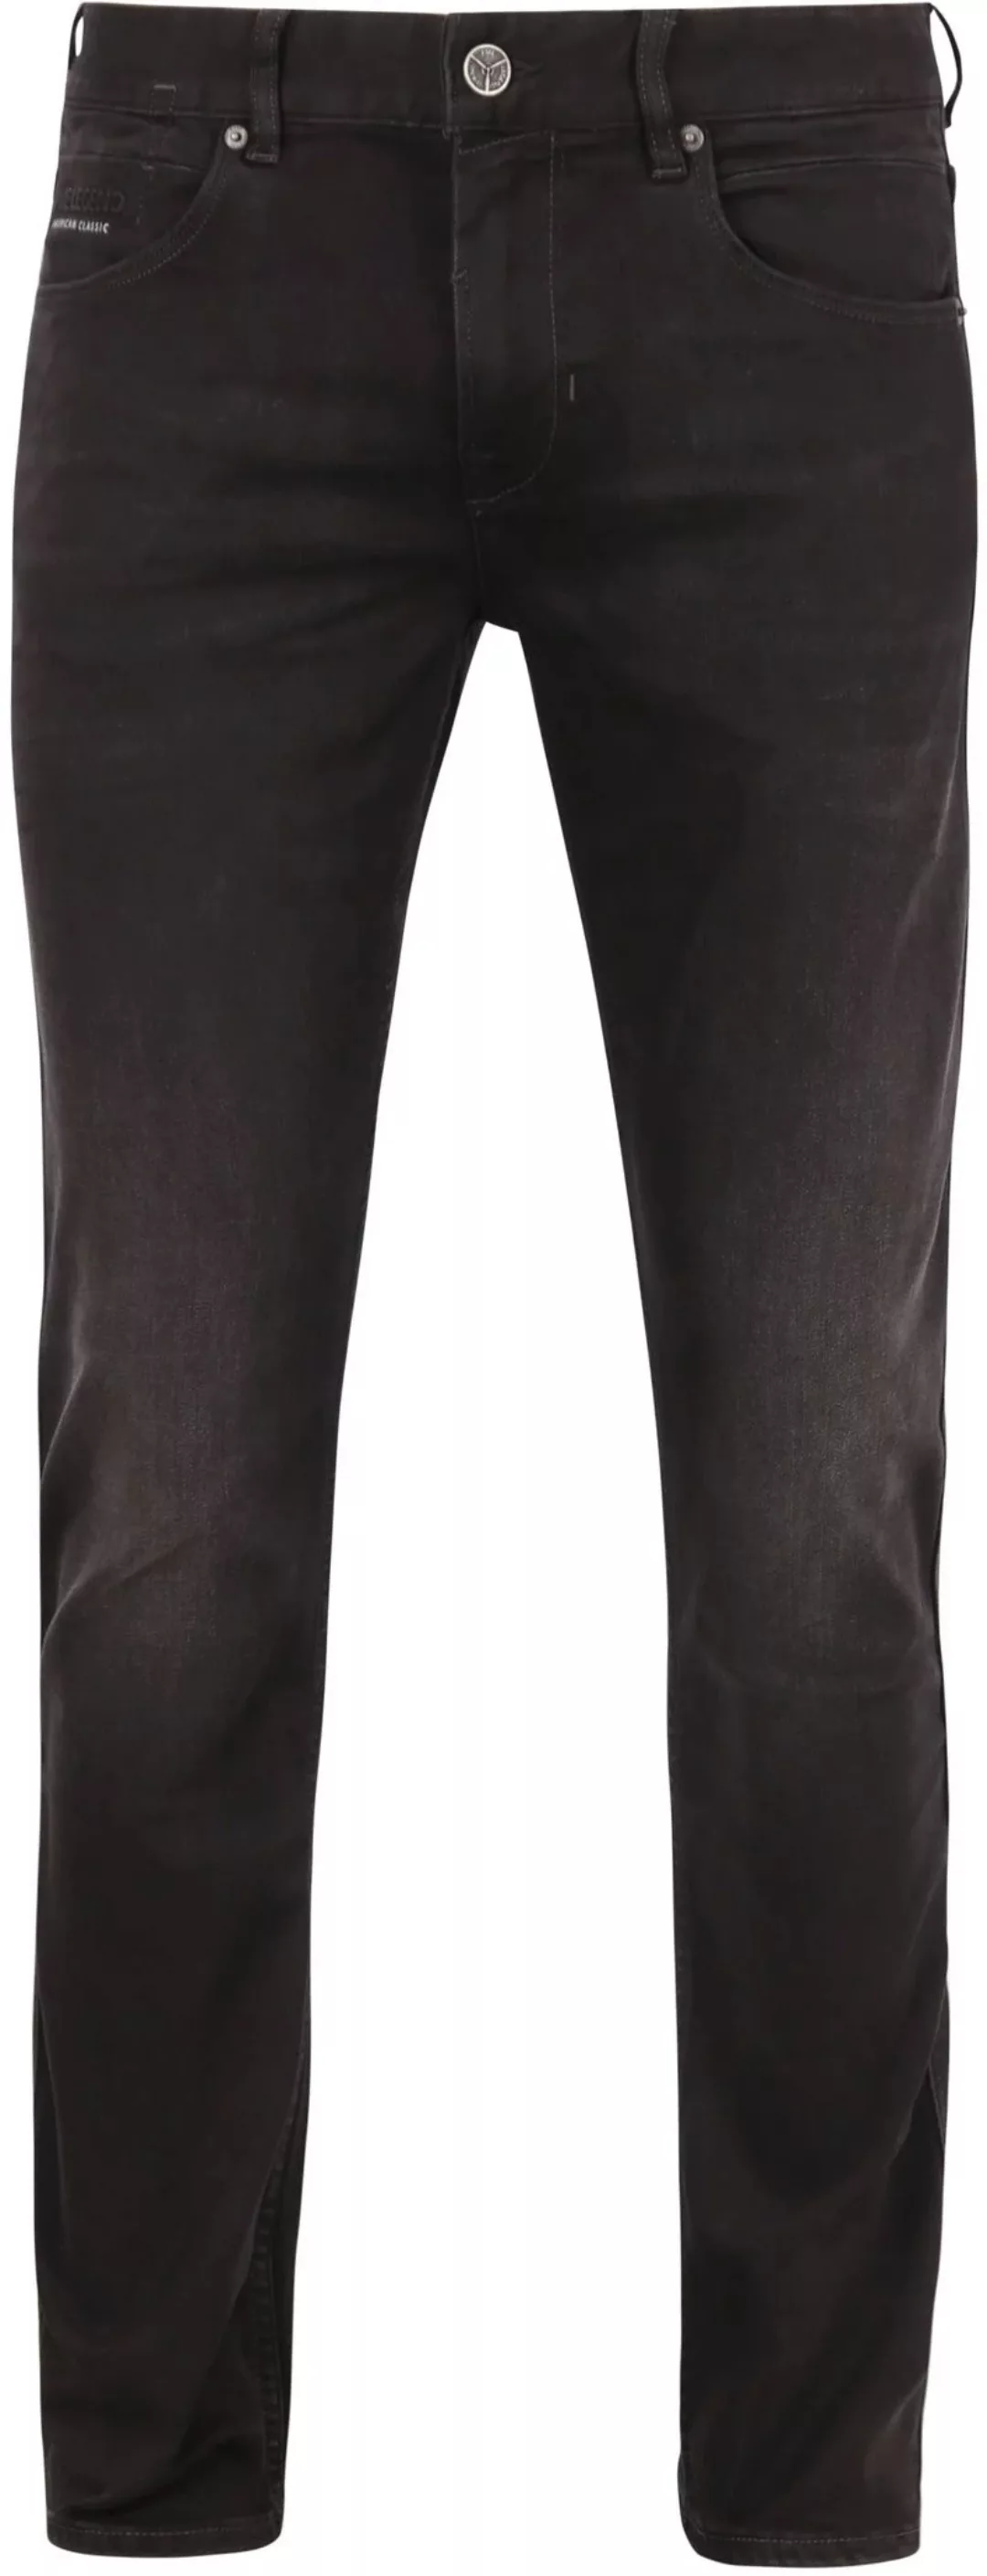 PME Legend Nightflight Jeans Schwarz RBD - Größe W 34 - L 34 günstig online kaufen